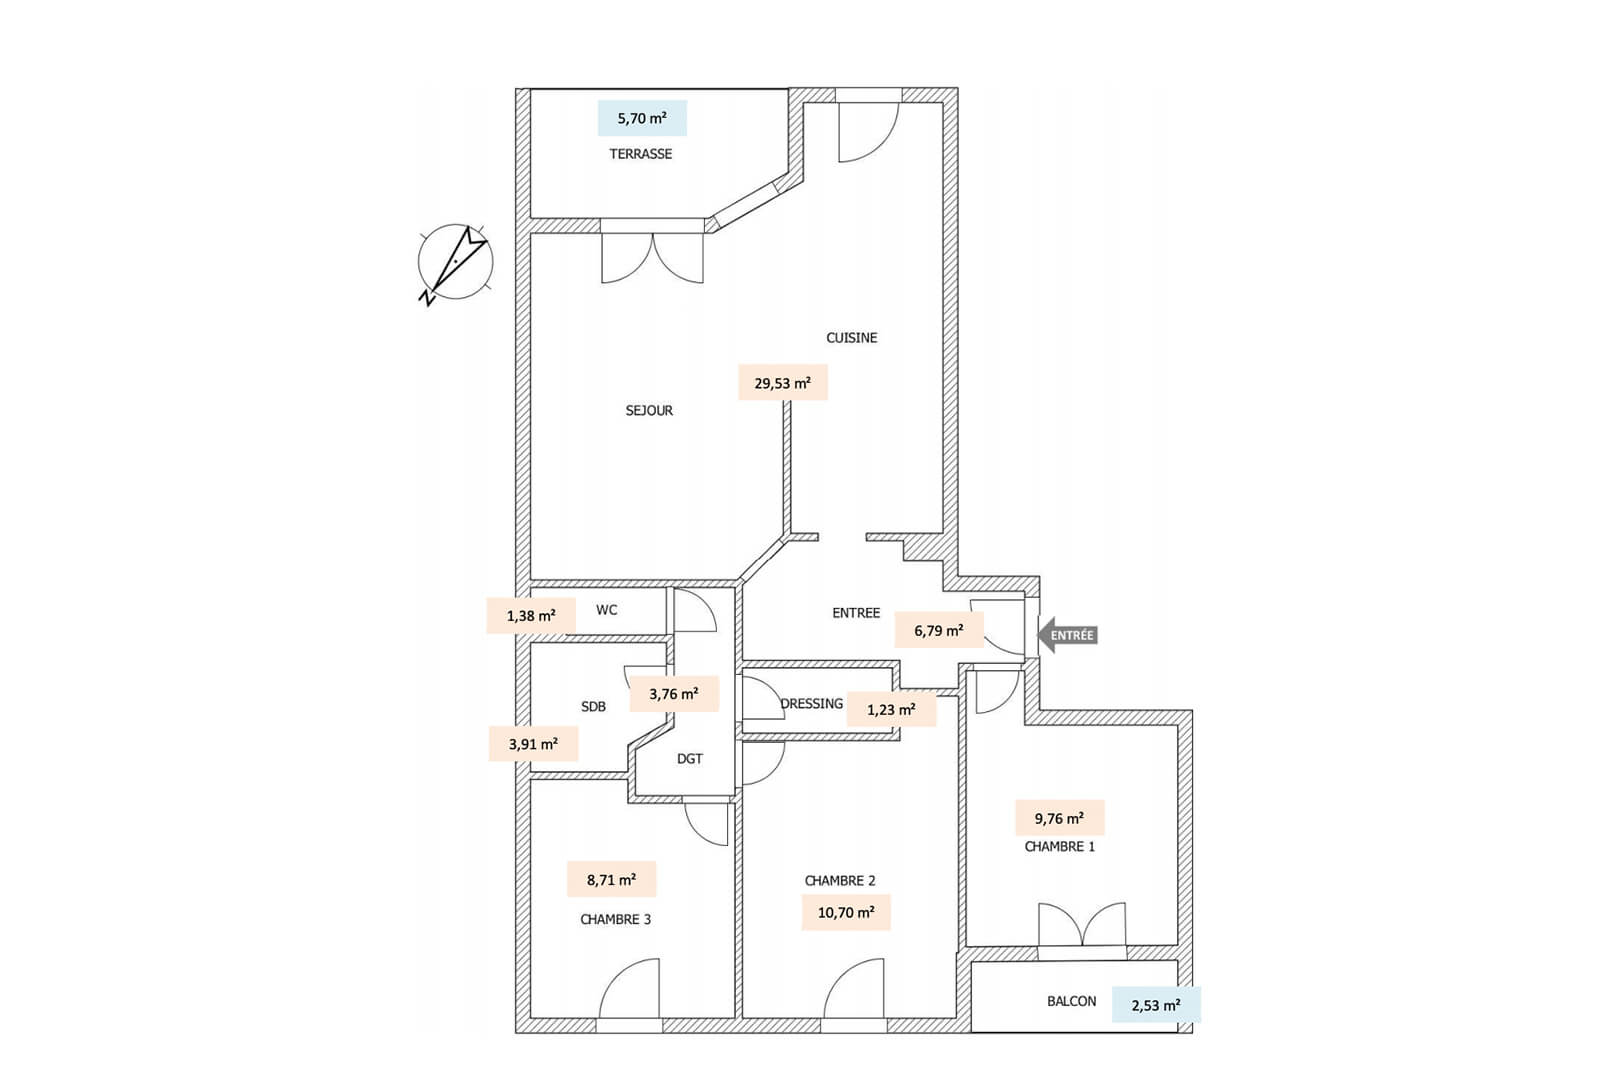 Homki - Vente Appartement  de 74.0 m² à Vallauris 06220